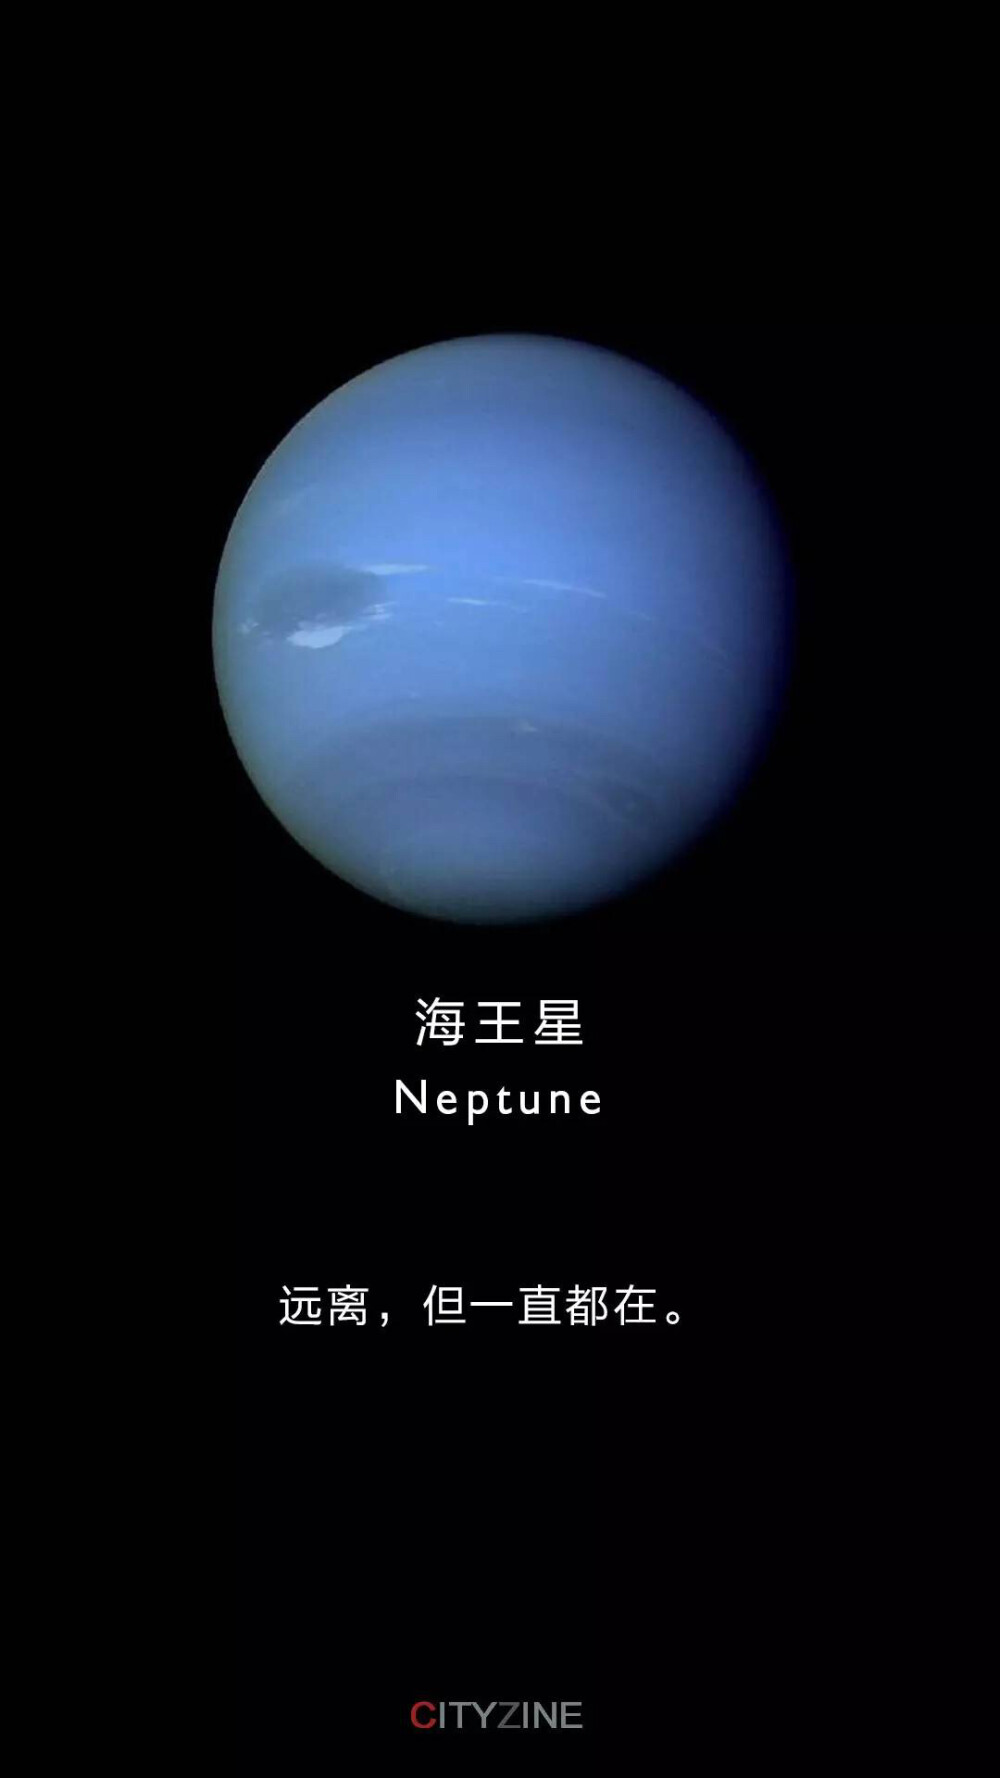 它是: 距离太阳最远的行星 海王星是远日行星之一,按照同太阳的平均